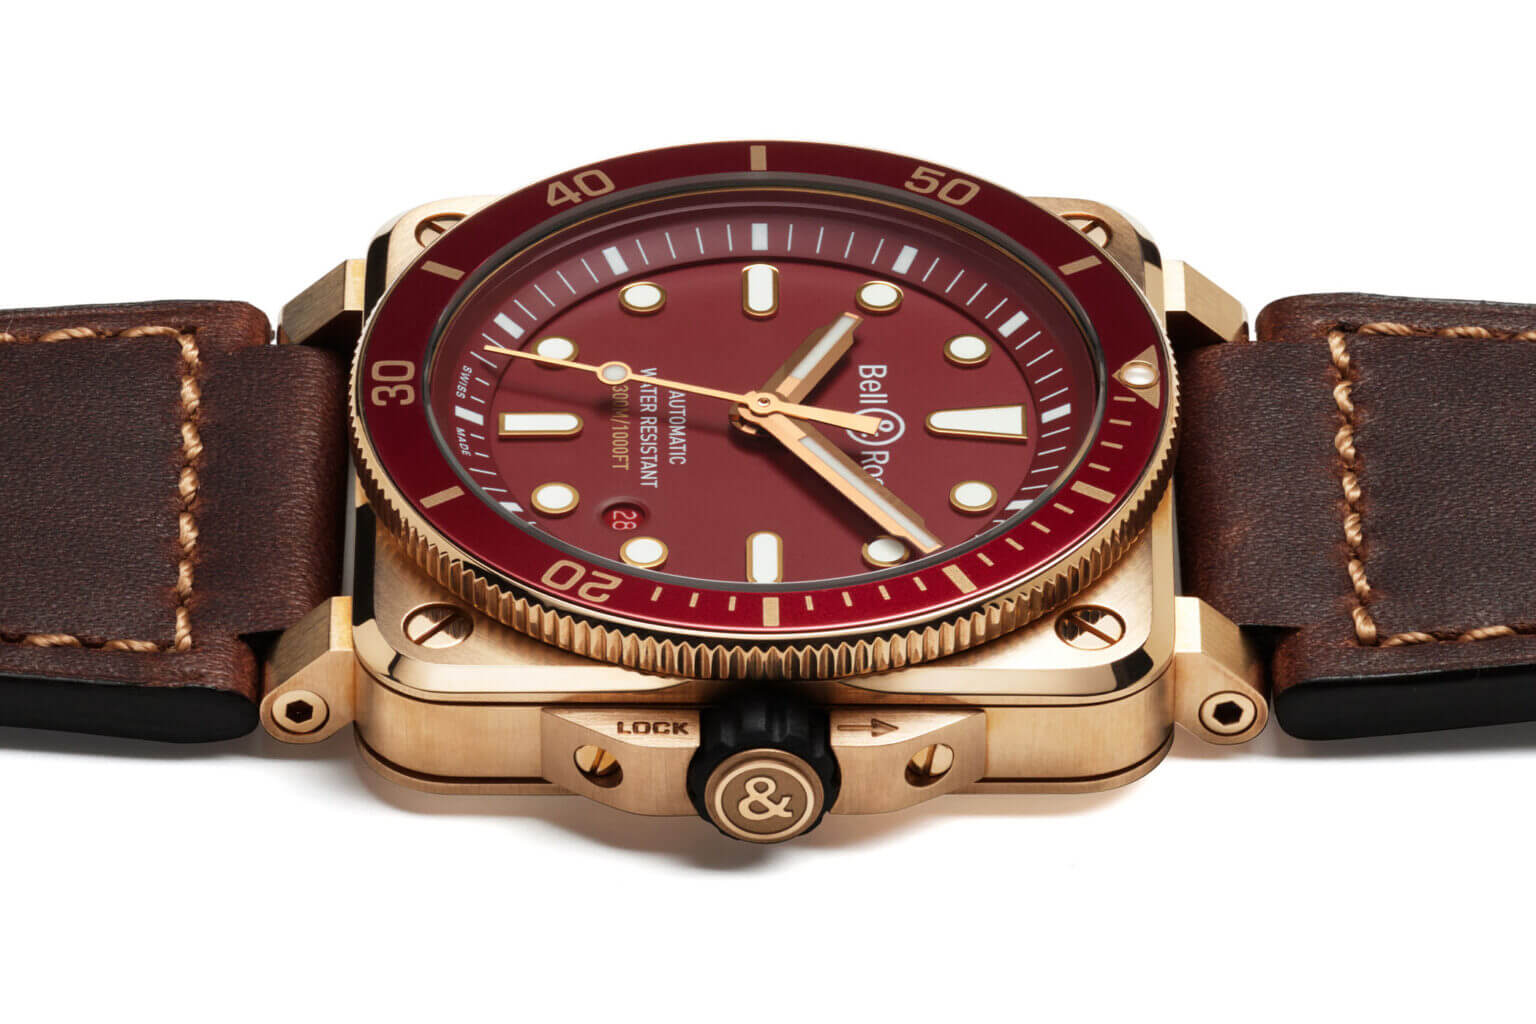 Корпус BR 03-92 Diver Red Bronze размером 42 мм x 42 мм изготовлен из бронзового сплава CuSn8, который состоит на 92% из меди и на 8% из олова